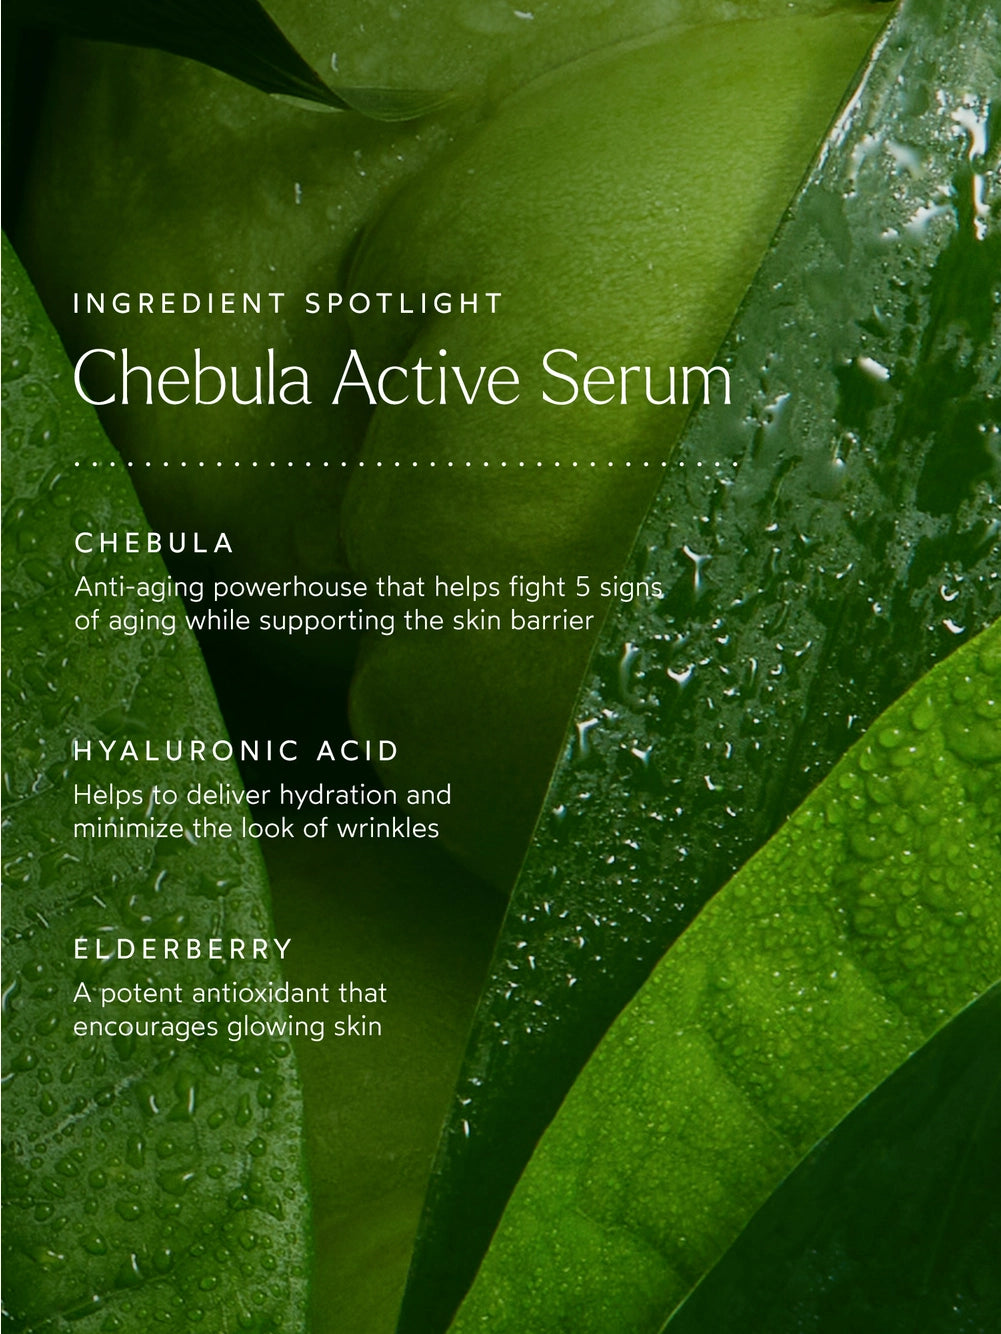 Chebula Active Serum